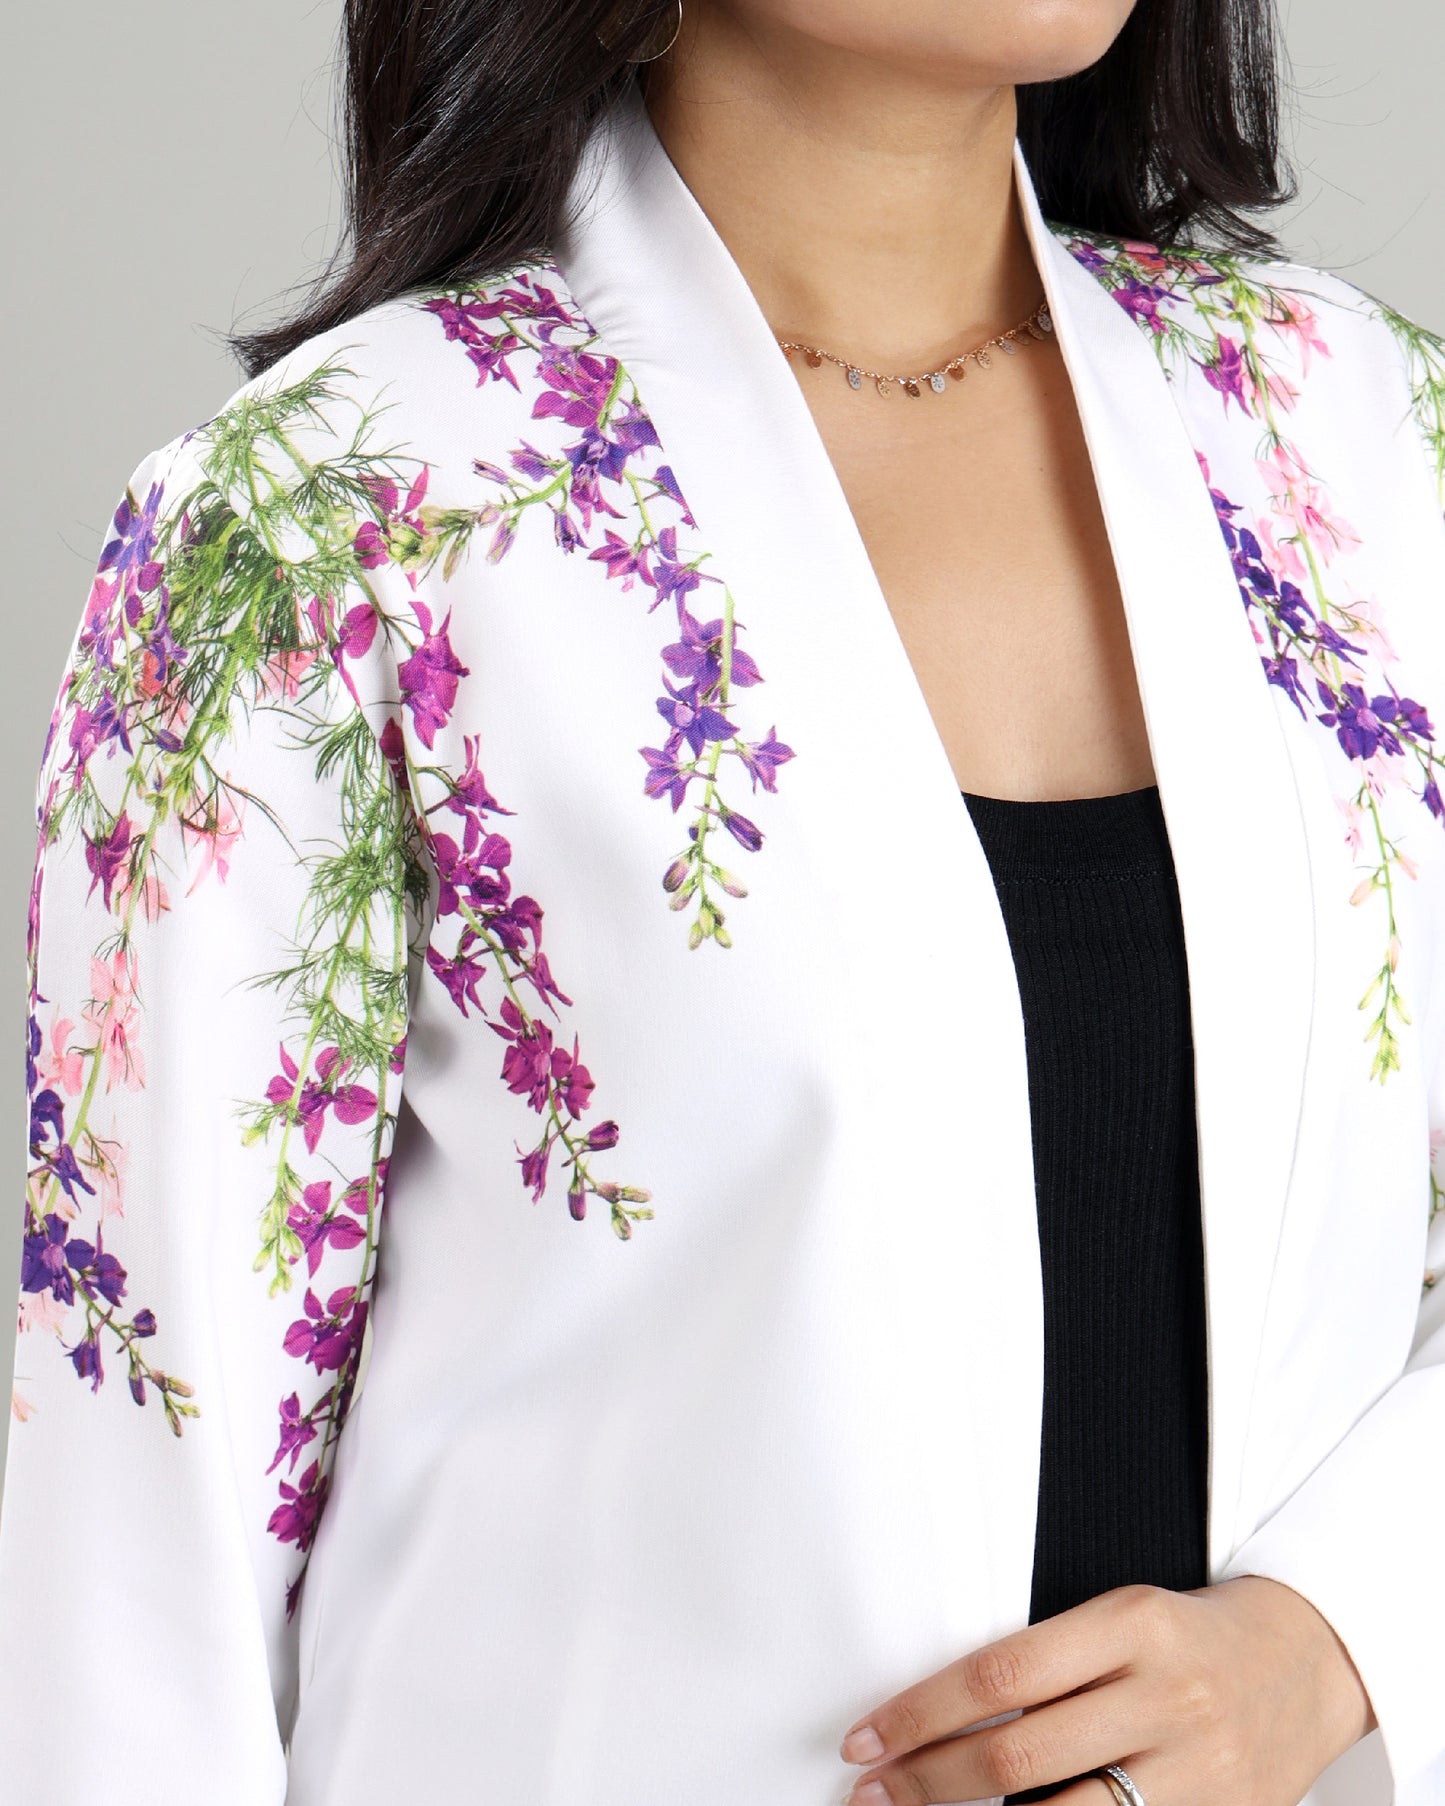 Floral with a Twist: A Unique Women's Jacket